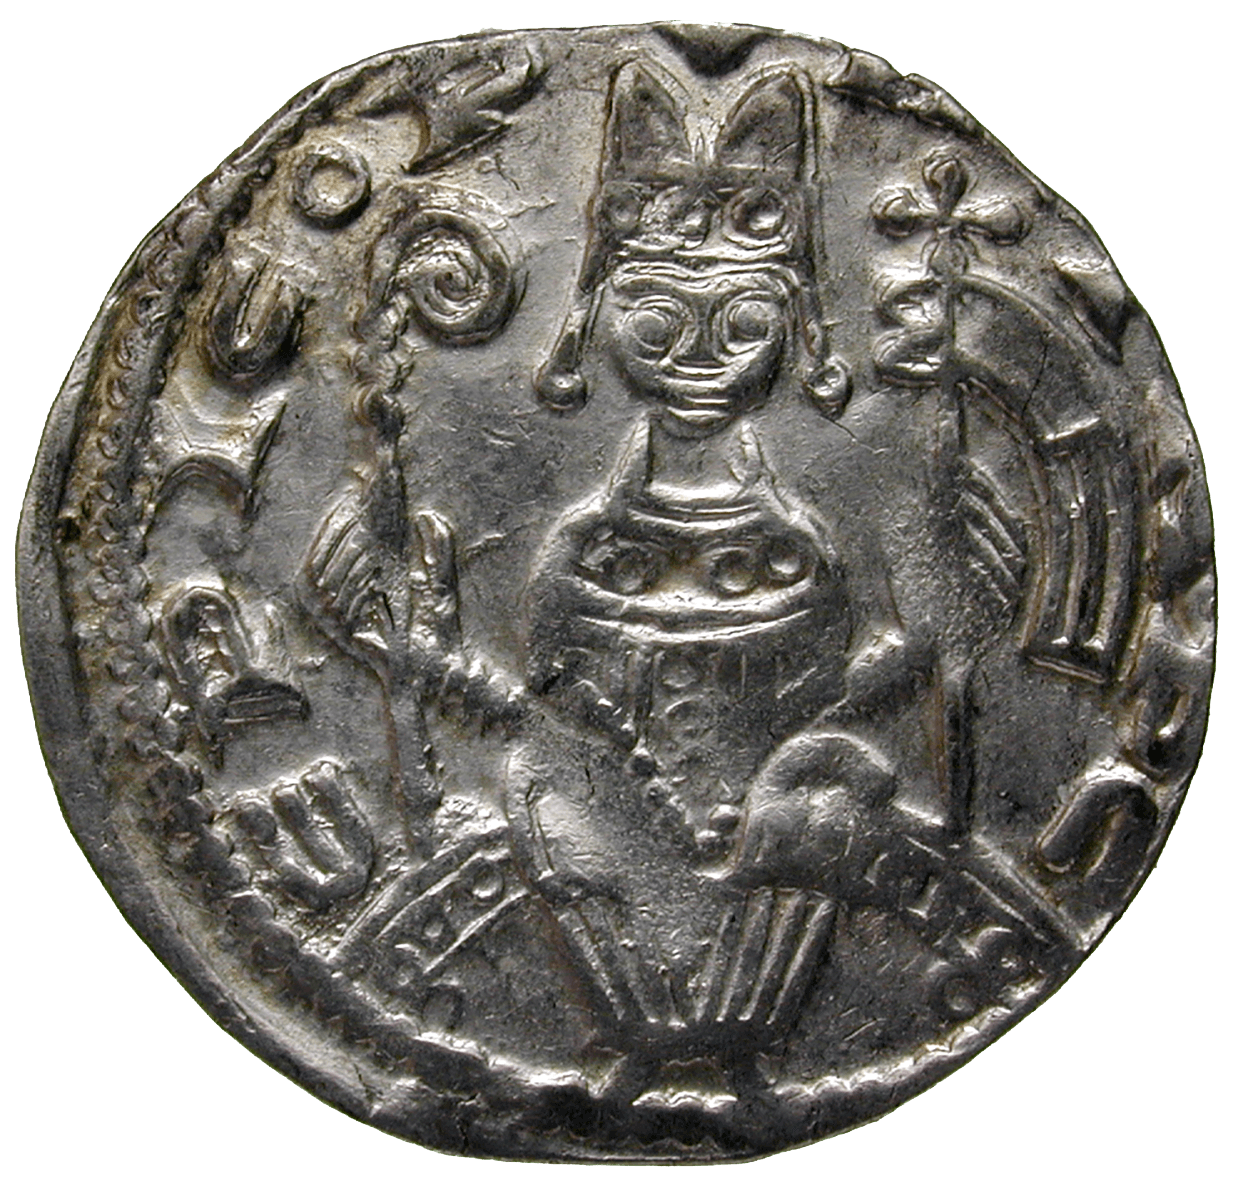 Heiliges Römisches Reich, Erzbistum Köln, Philipp von Heinsberg, Pfennig (obverse)